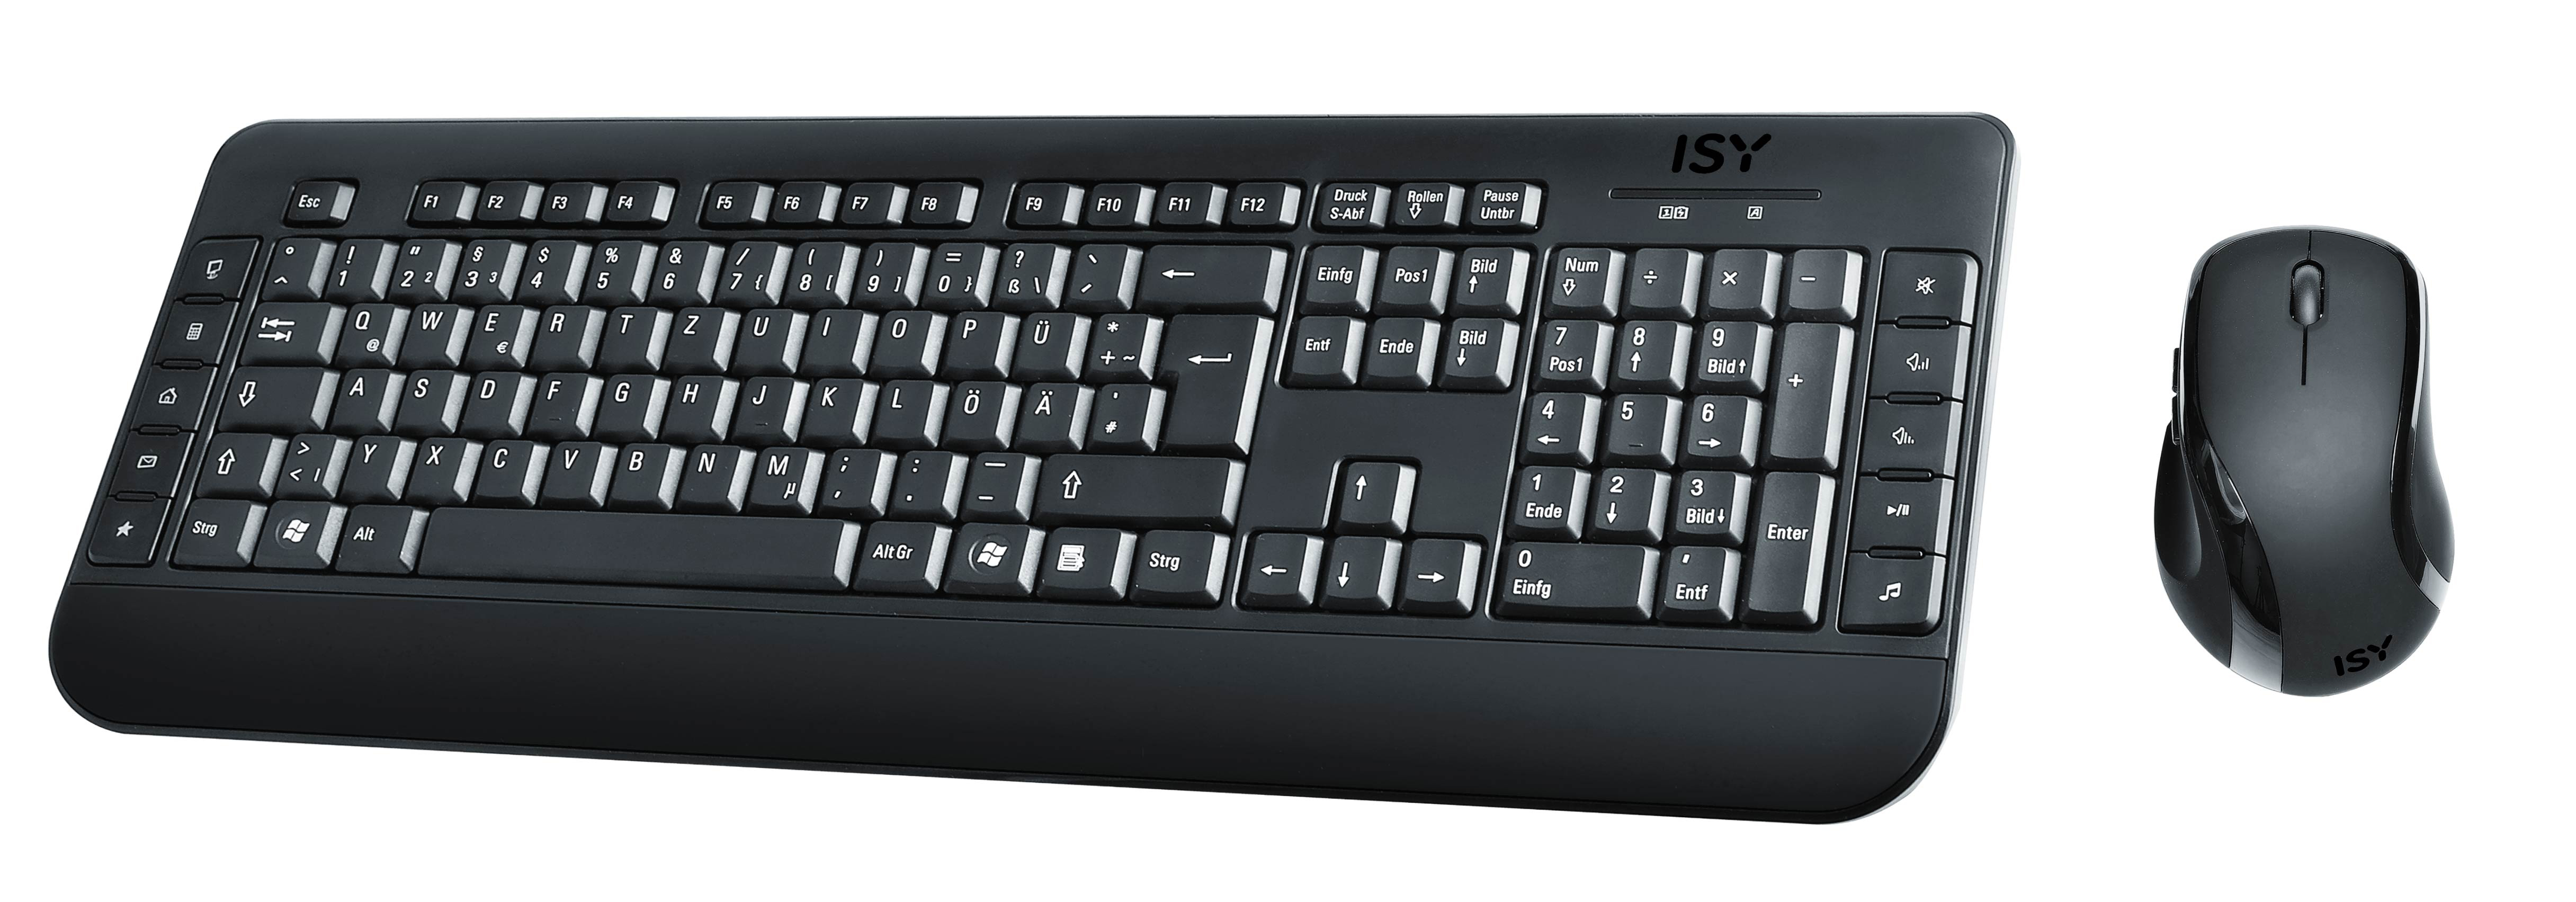 ISY IDE 3100, & Schwarz Tastatur Maus Set, kabellos